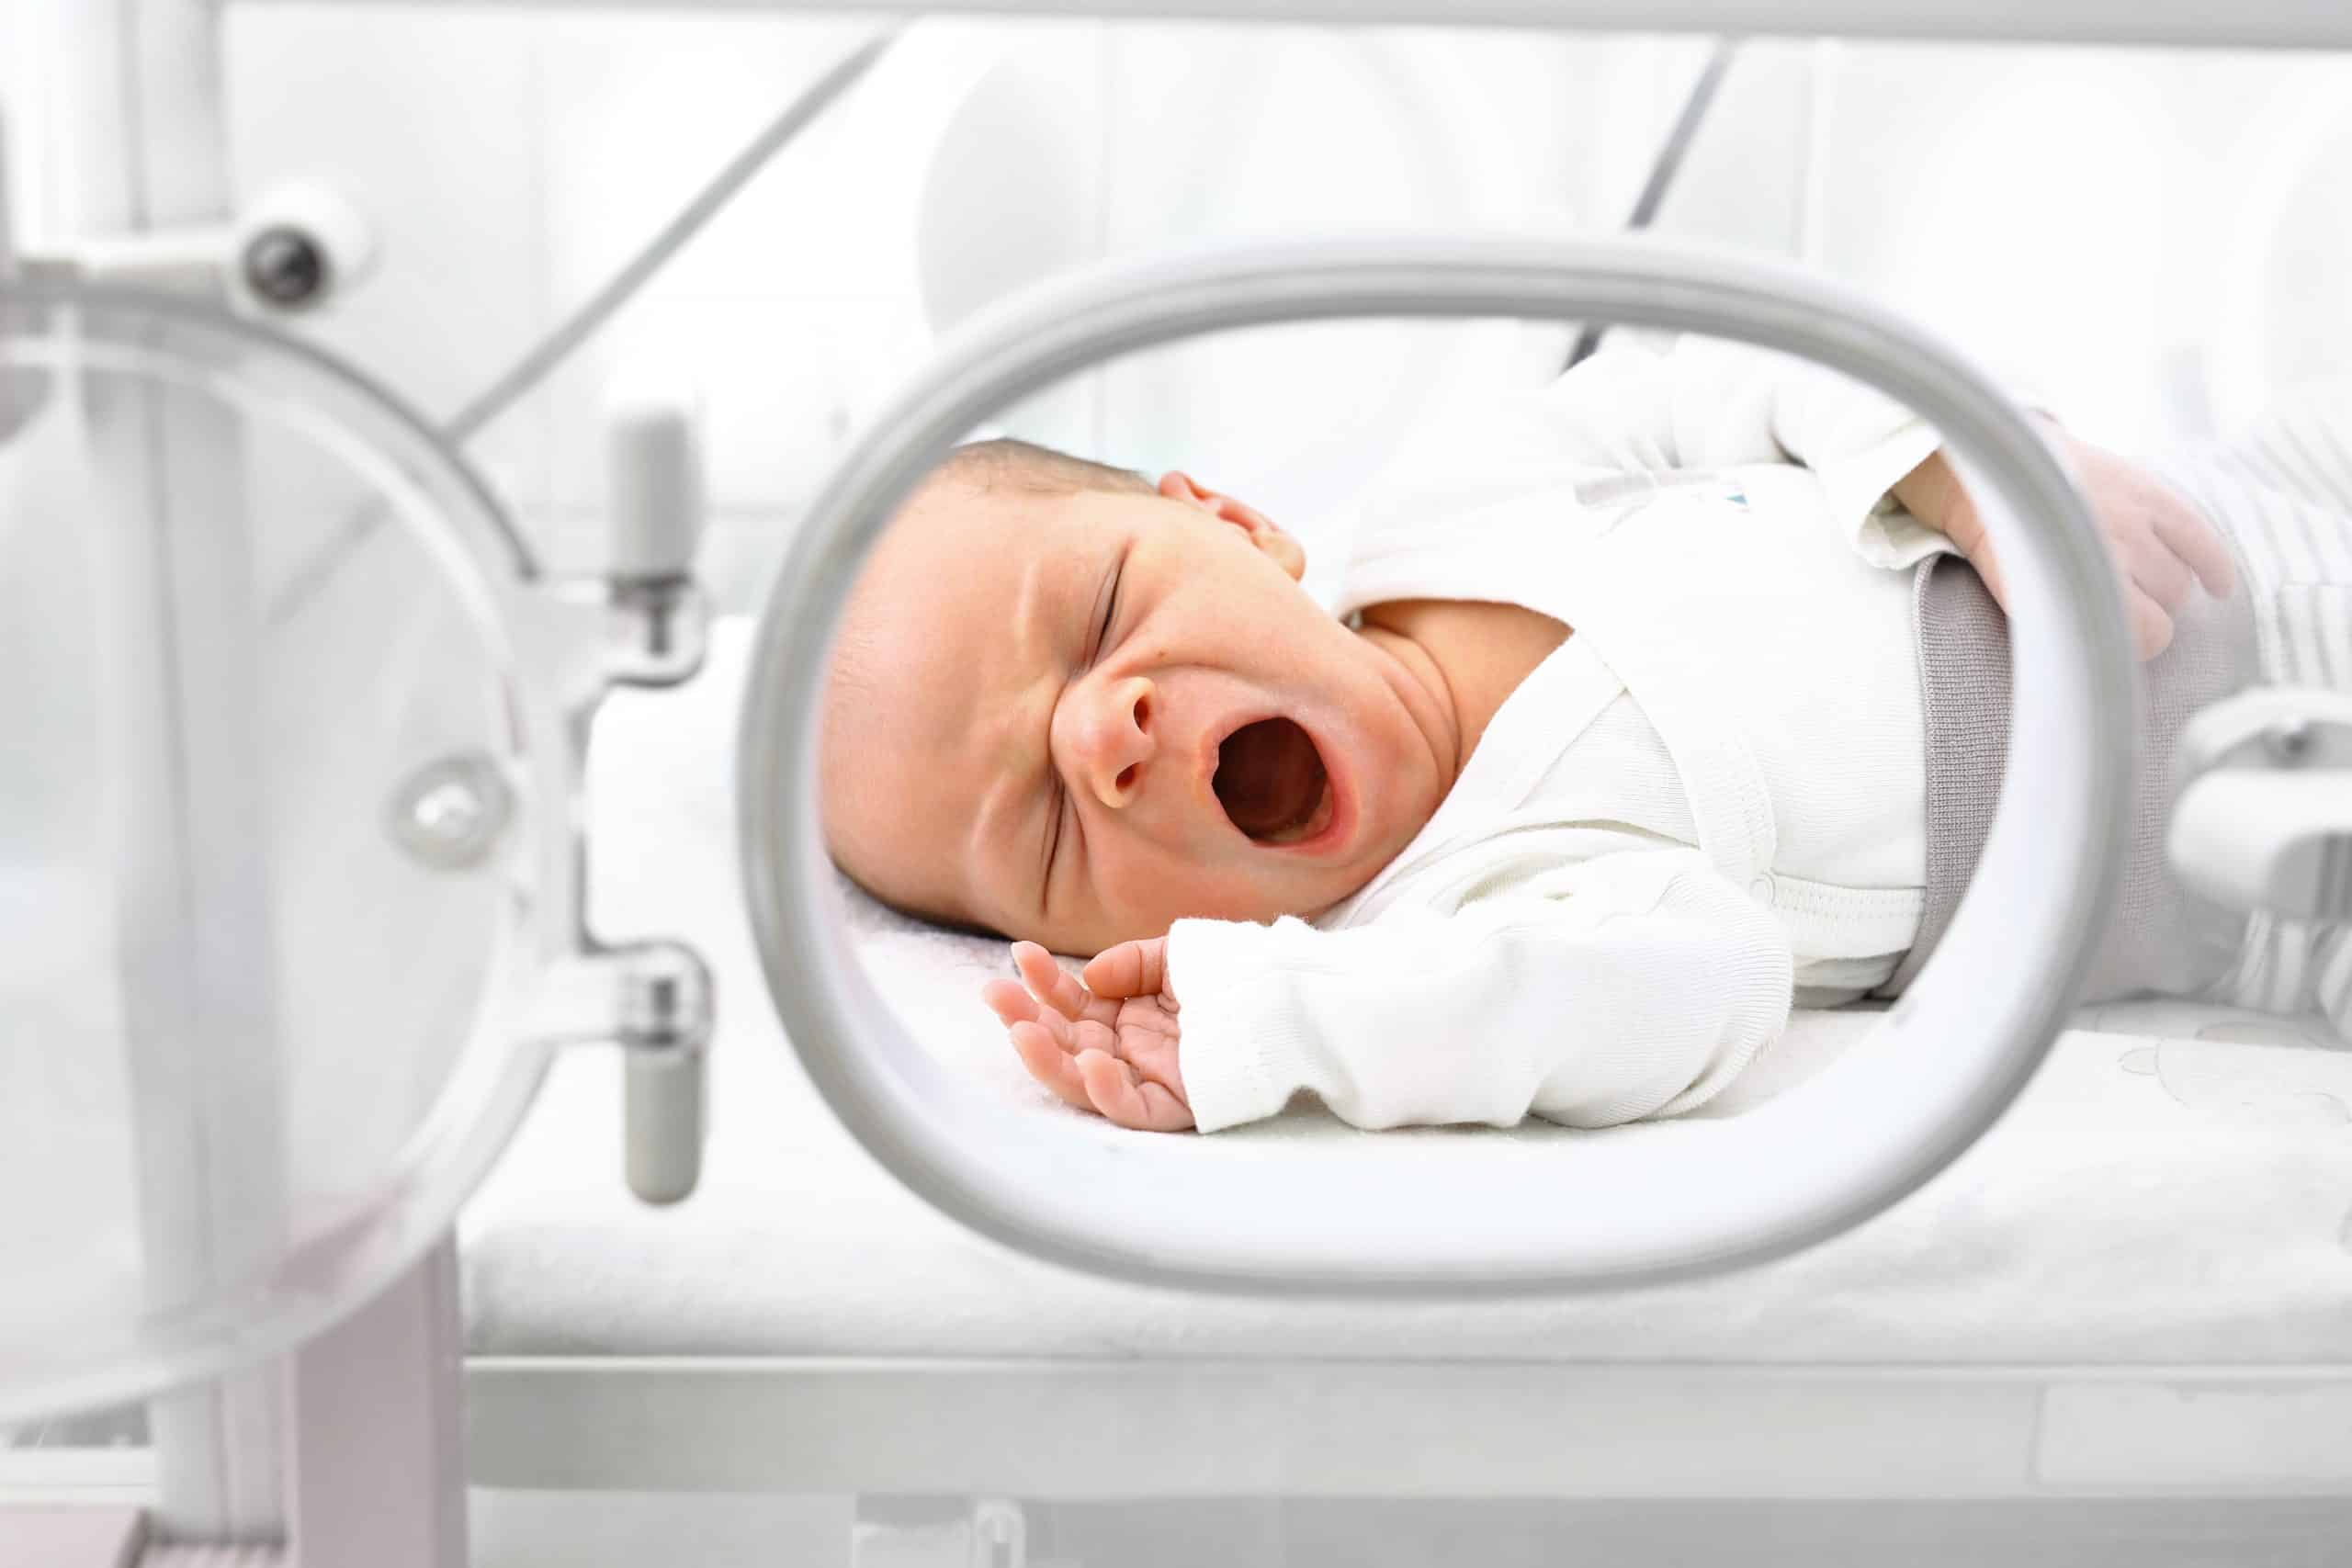 Bebé prematuro su desarrollo cerebral mejora cuando se favorece la conexión emocional con su madre